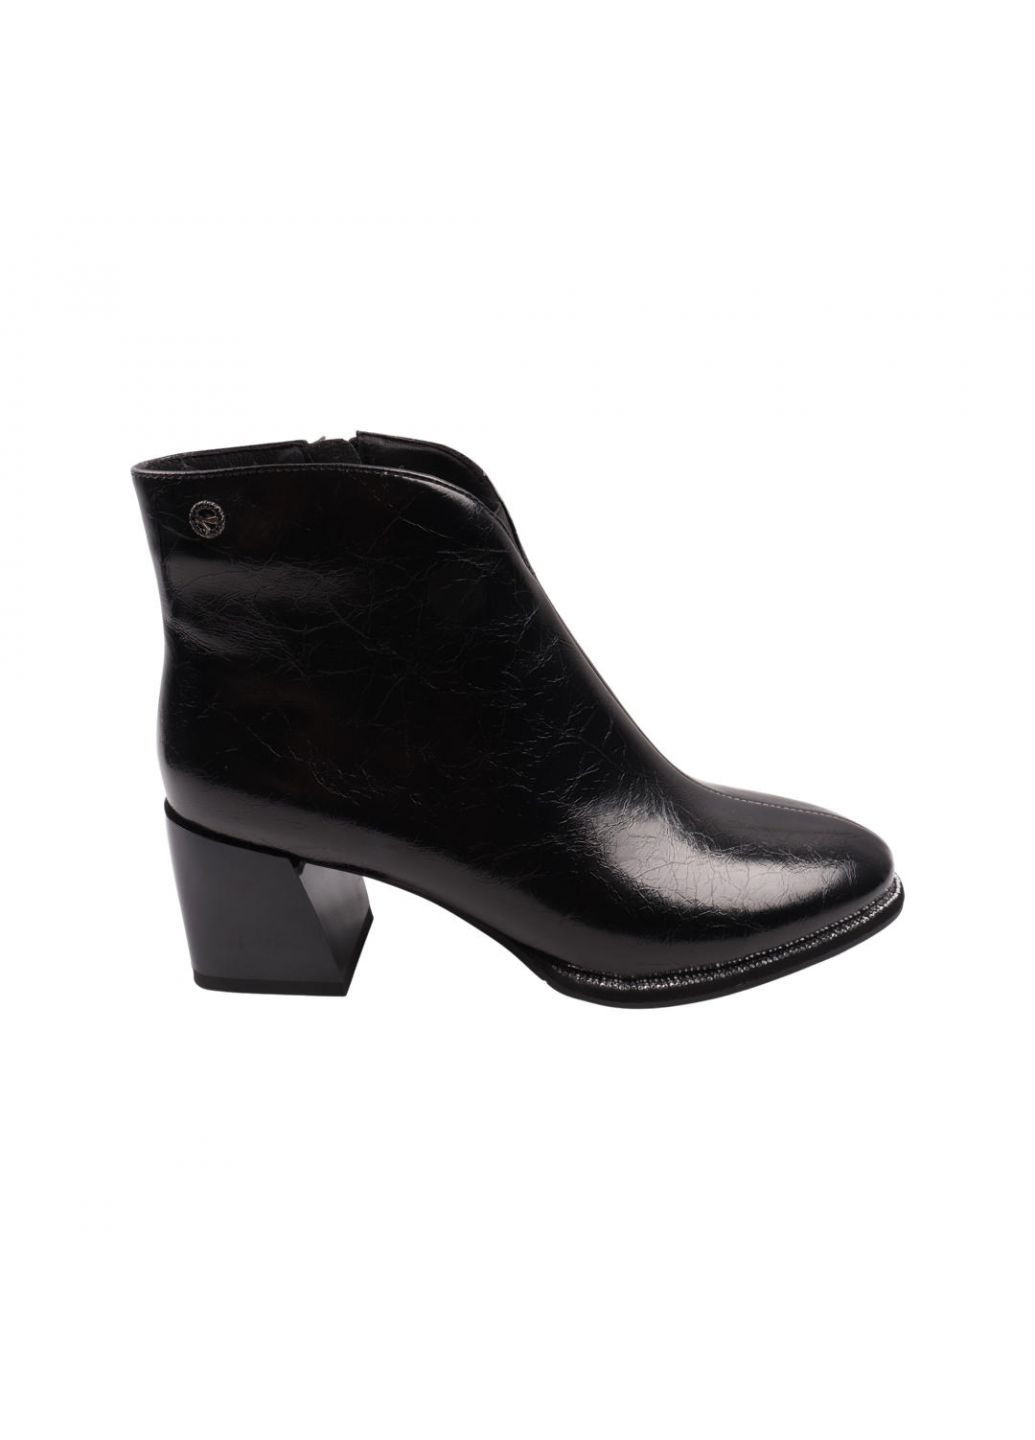 Черные ботинки женские черные натуральная кожа Brocoly 416-22DH